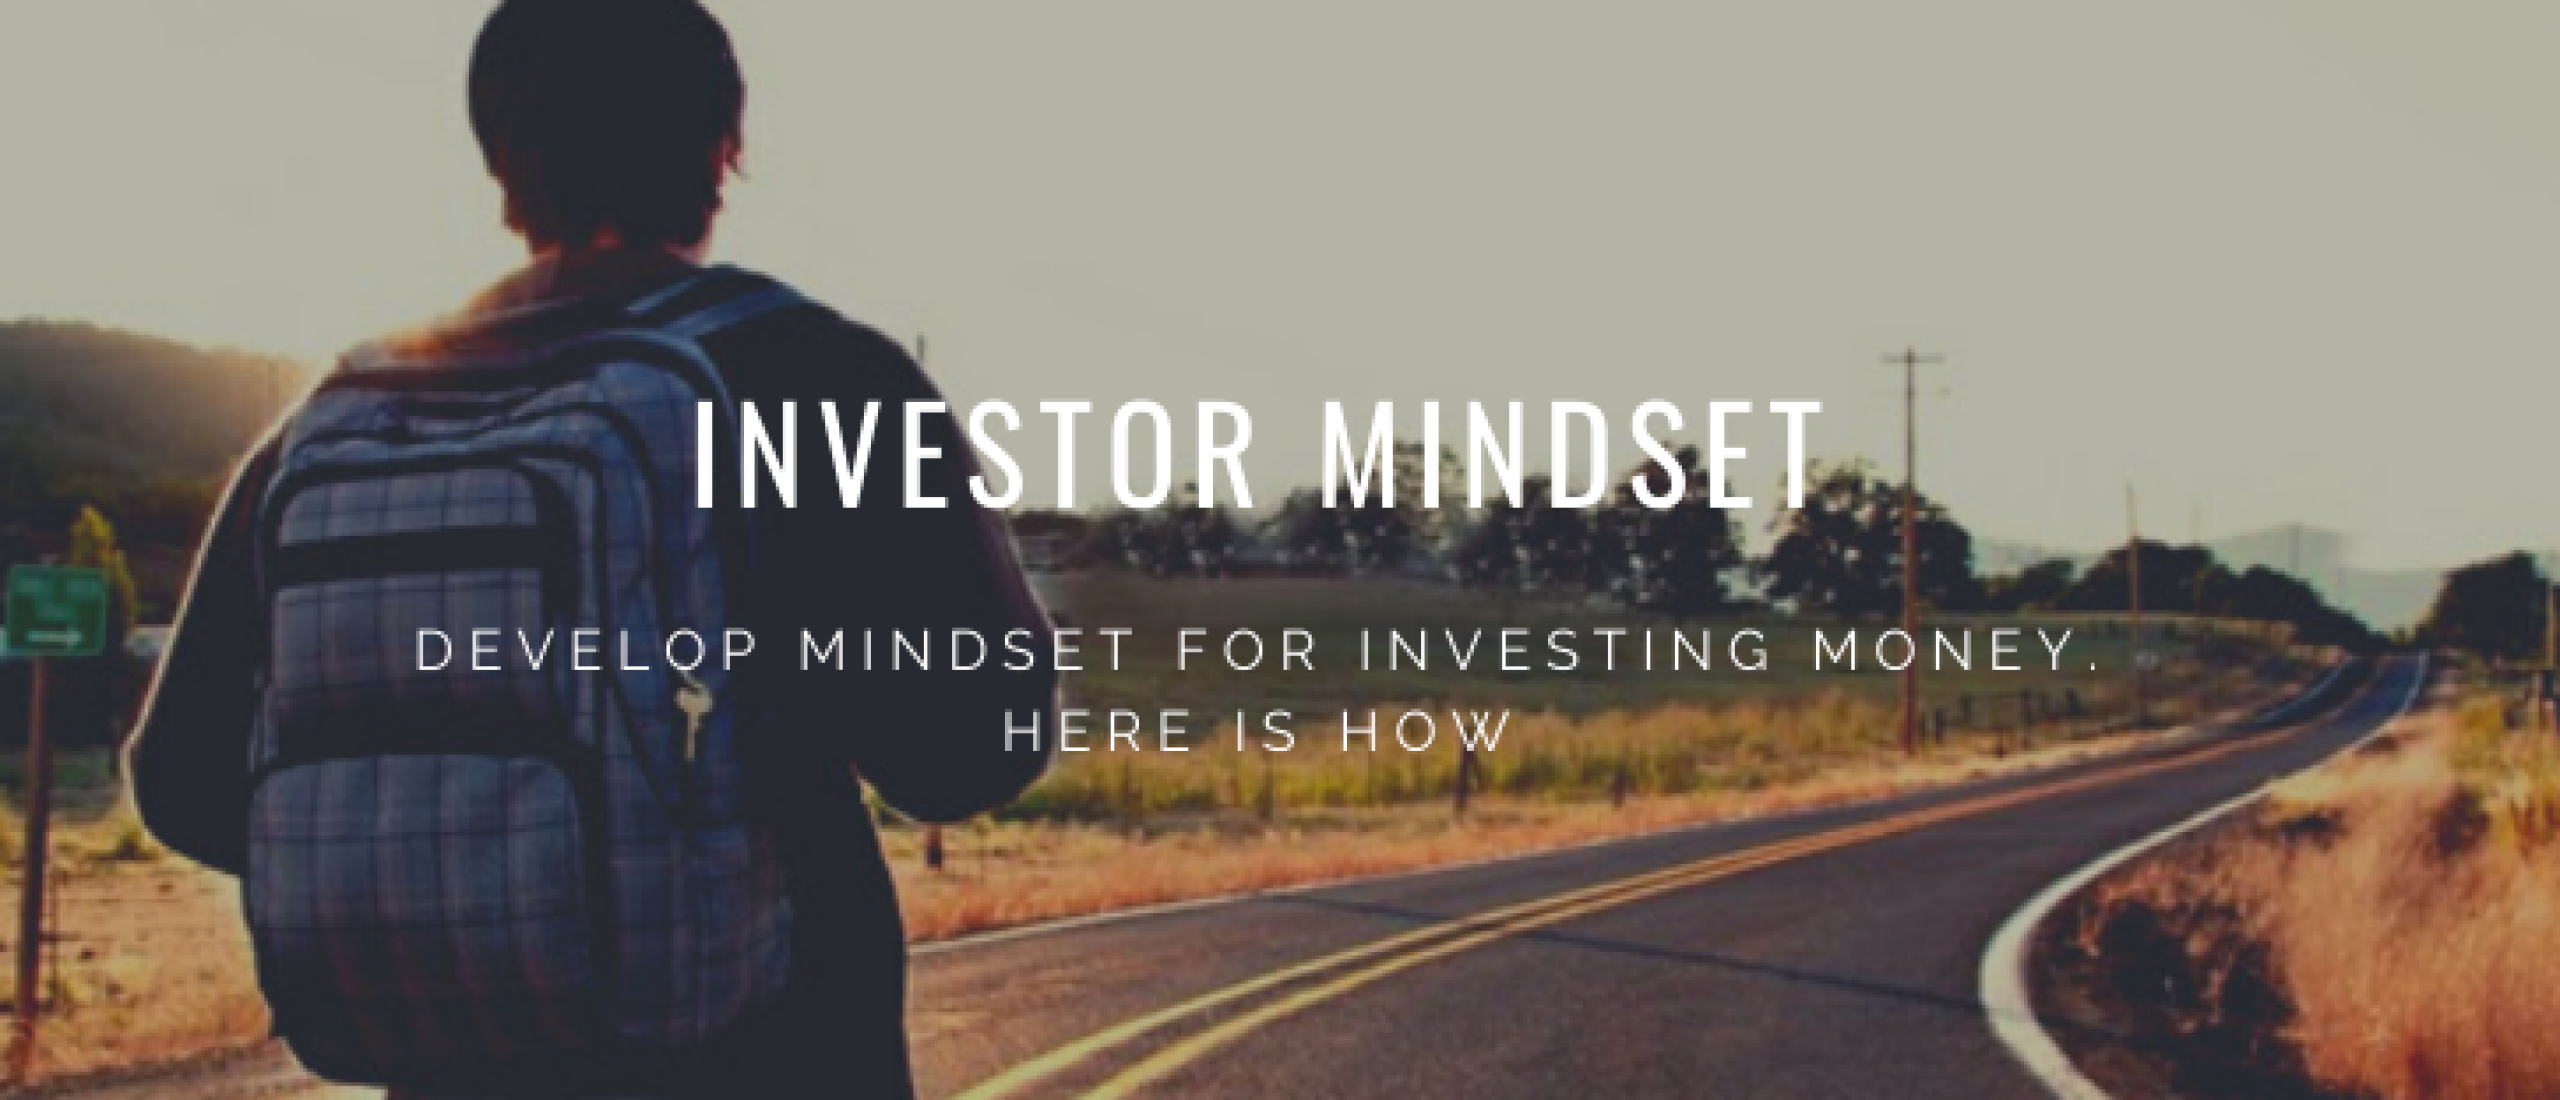 Investor Mindset: Develop Mindset for Investing Money